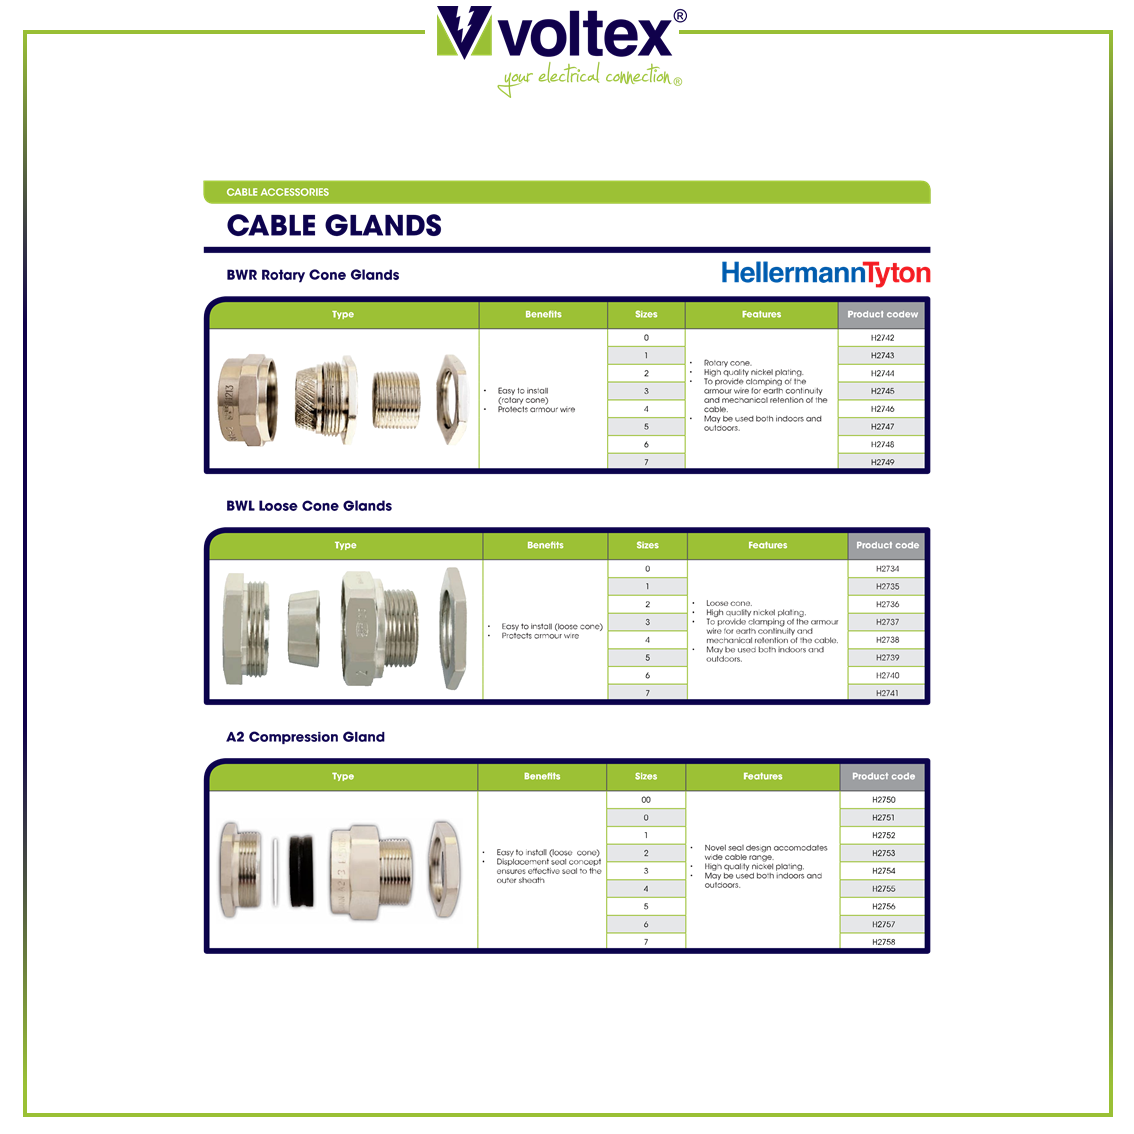 VOLTEX - Cable Glands Catalogue